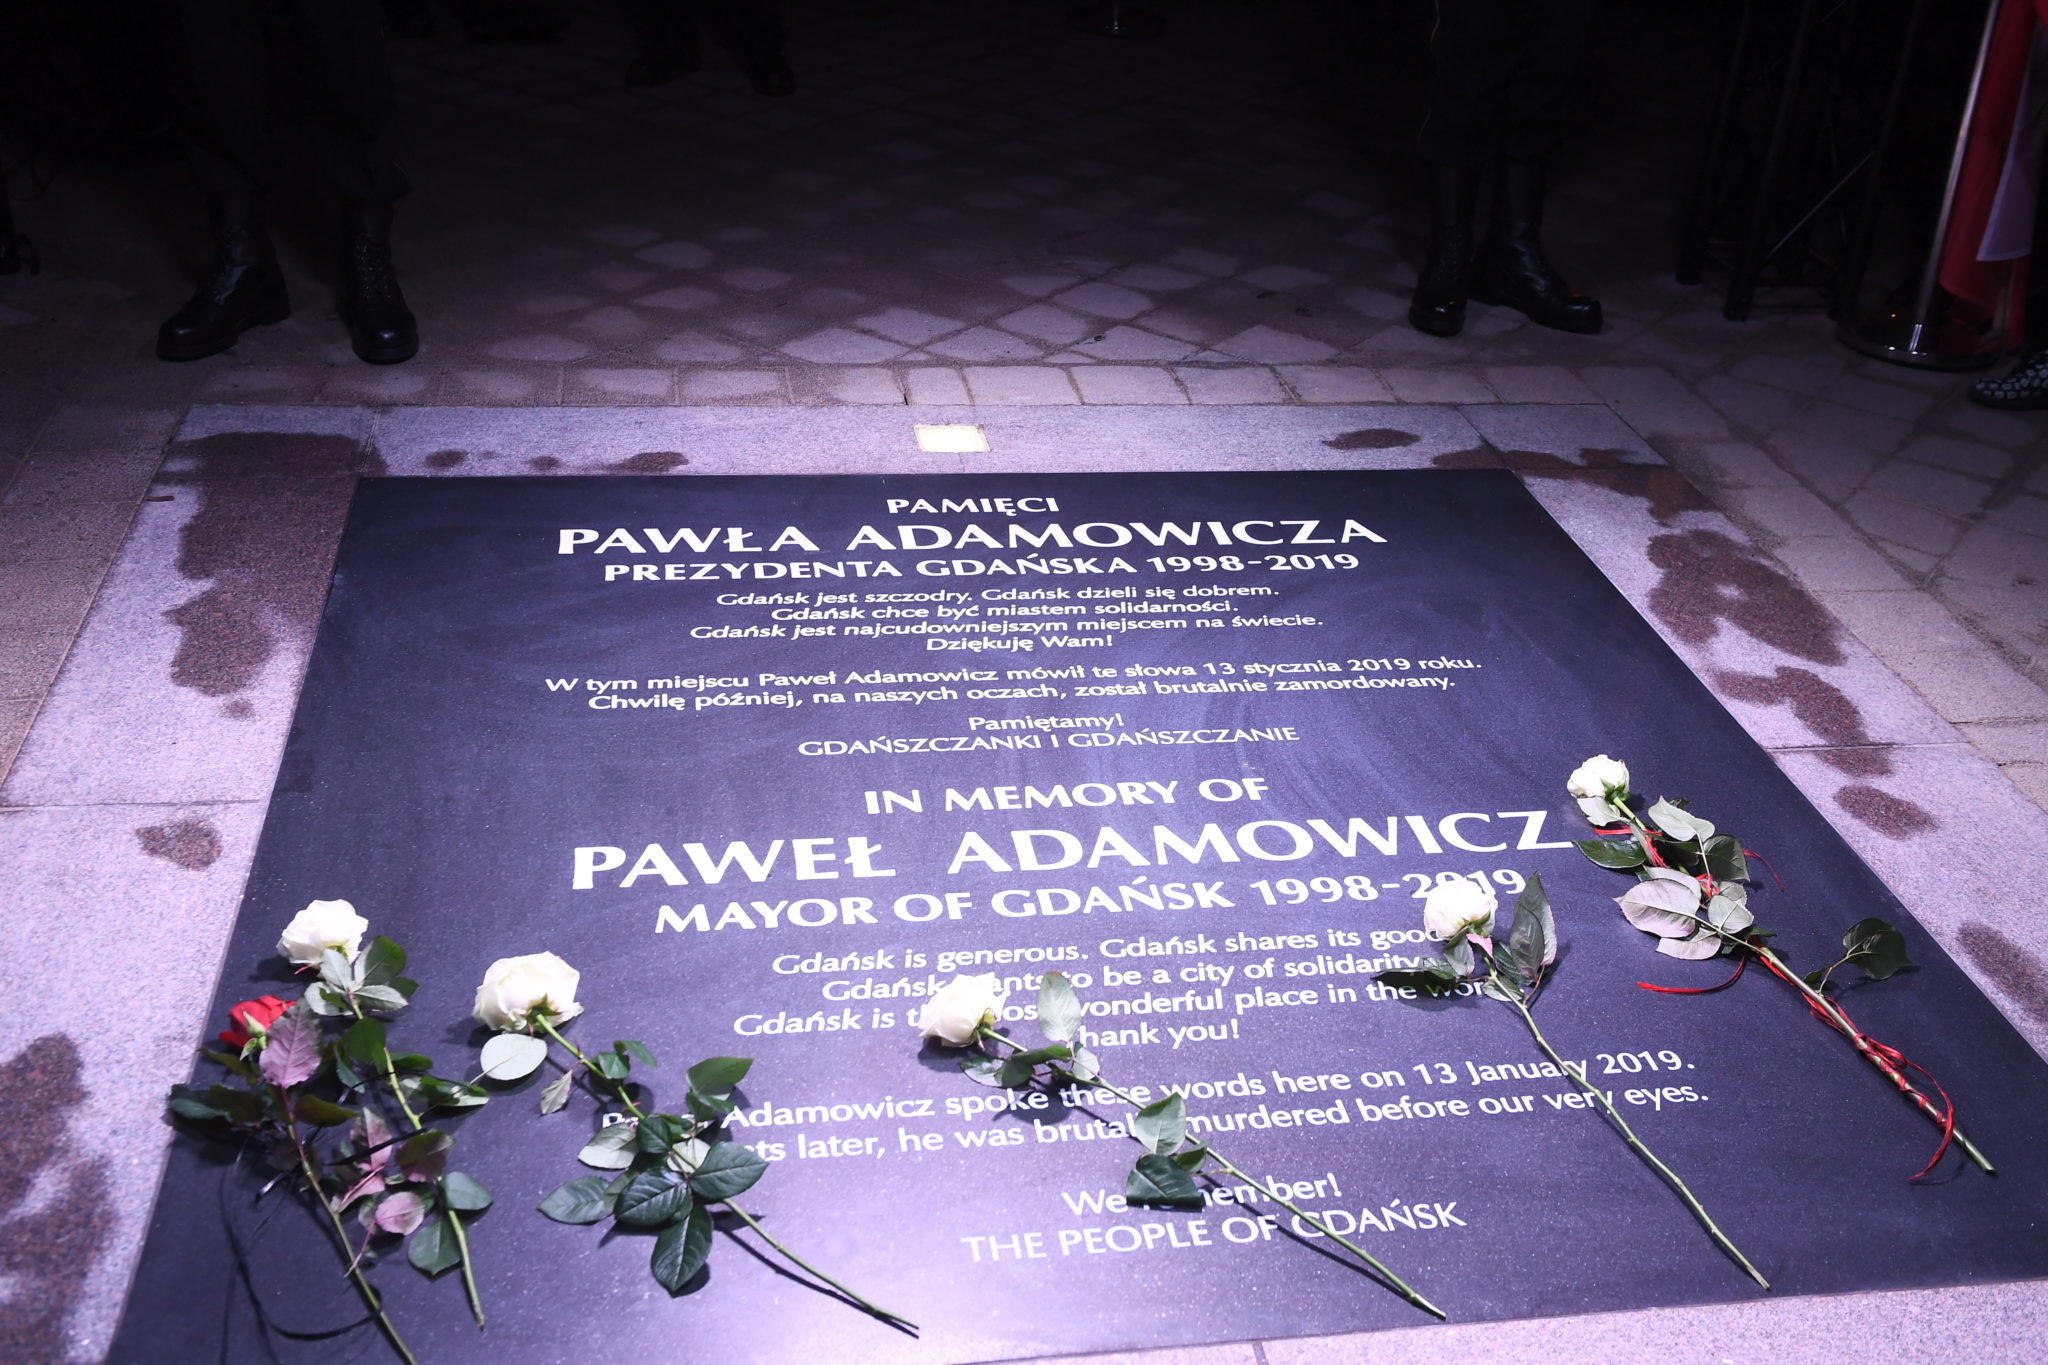  Tablica pamiątkowa poświęcona Prezydentowi Adamowiczowi, fot. PAP/Marcin Gadomski